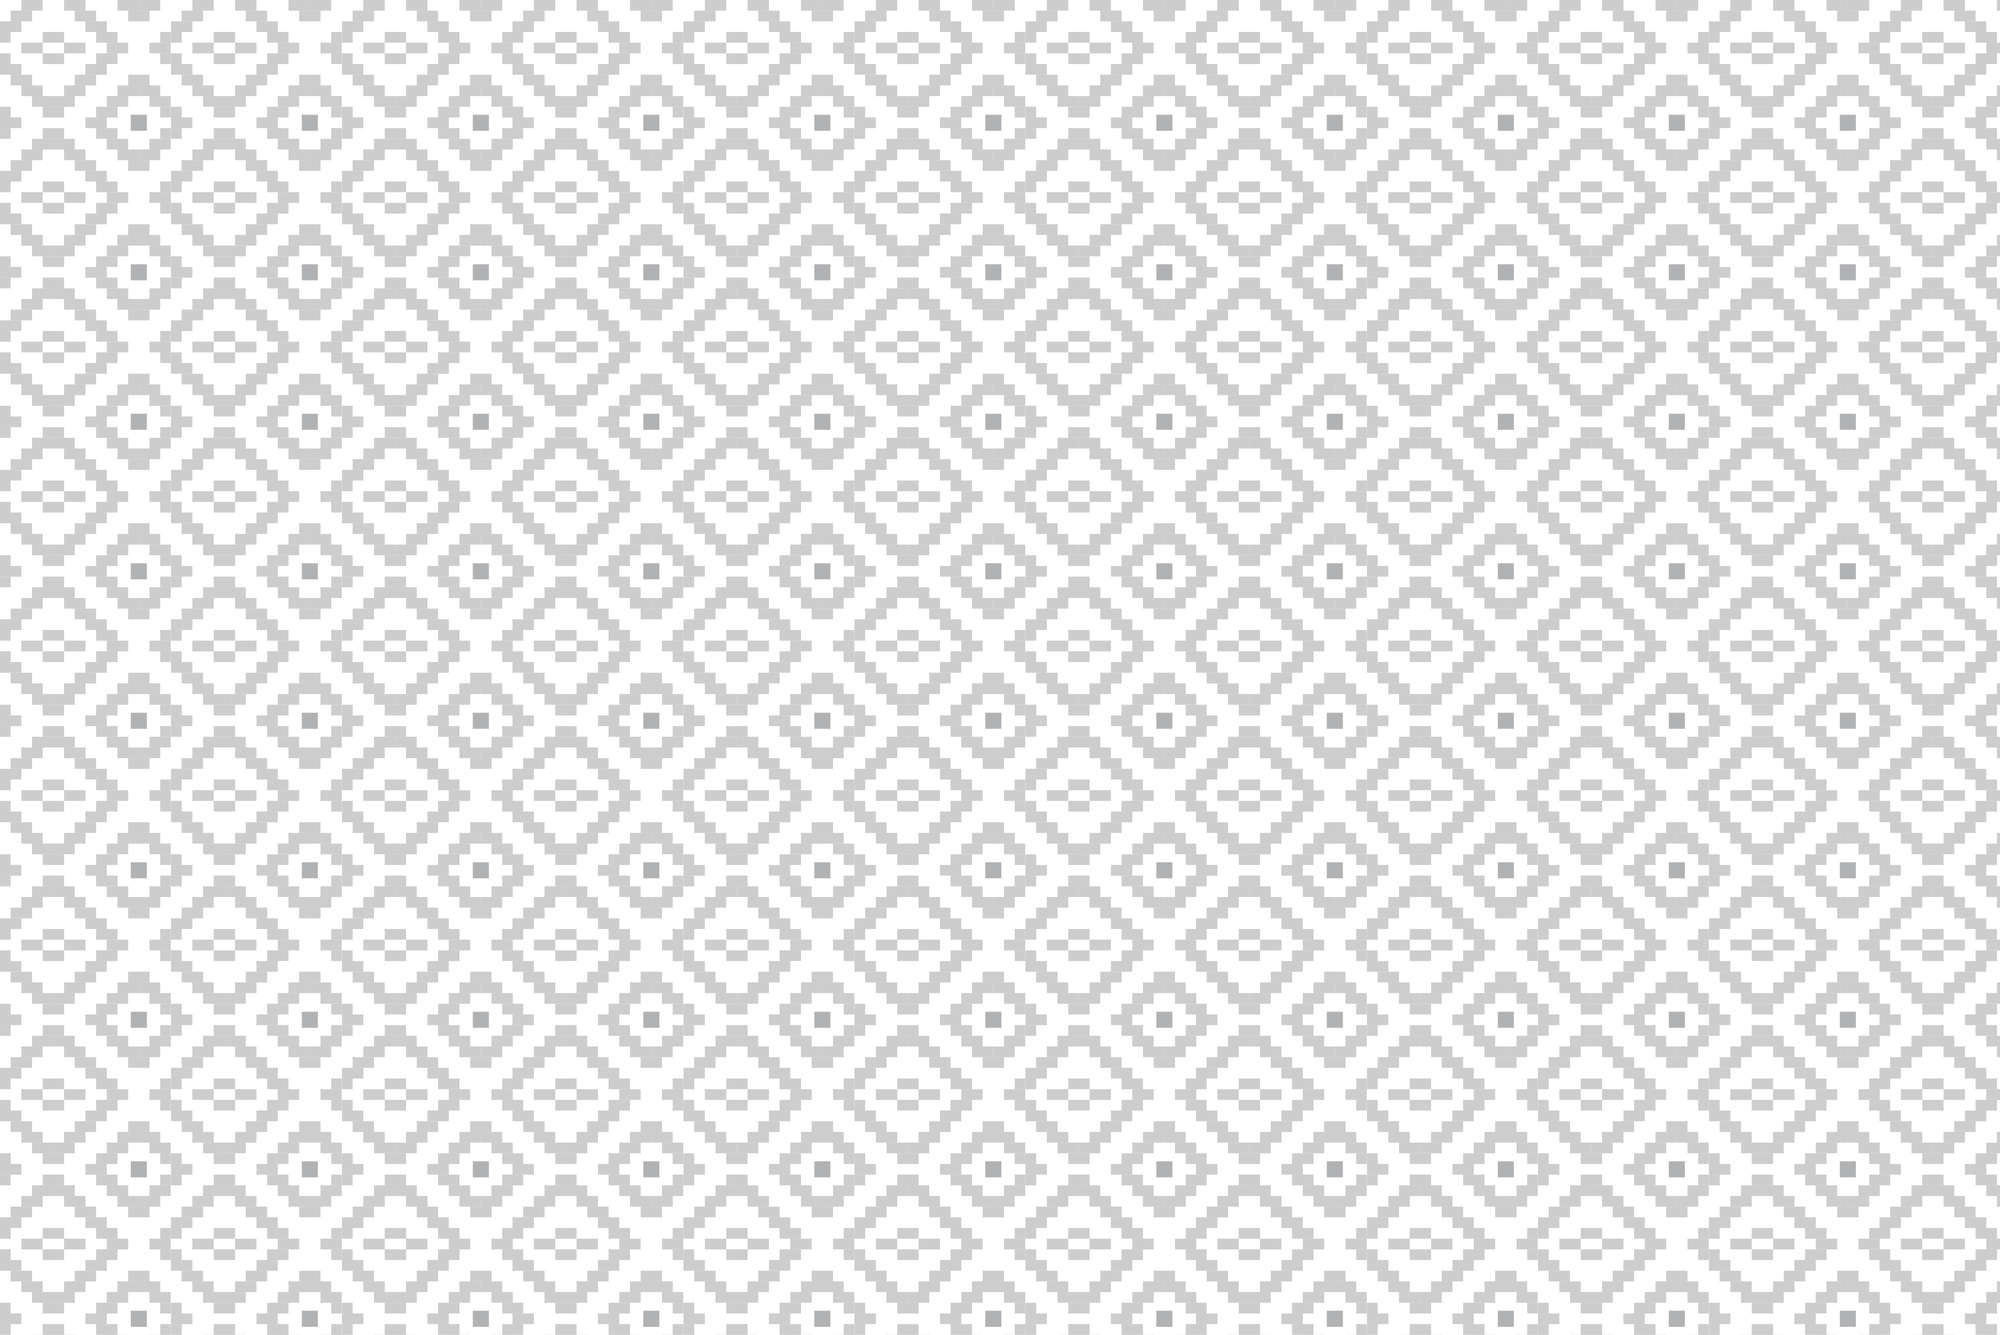             Designbehang kleine vierkantjes met patronen grijs op mat glad vlies
        